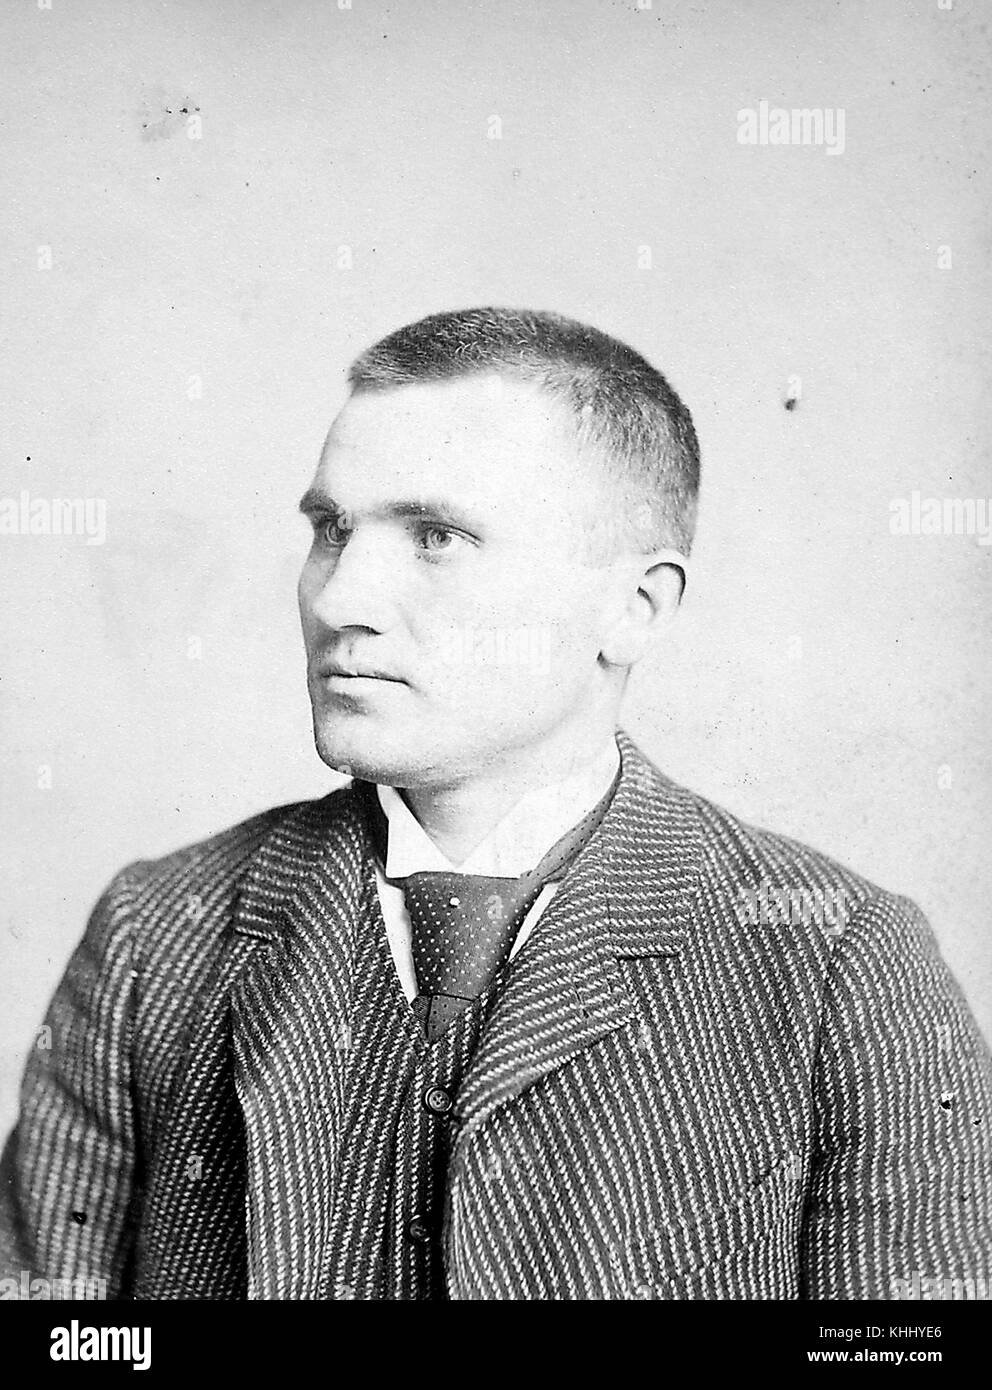 Portrait von Danny Richardson, New York base ball Club (nybbc) 1888, US-amerikanischer Baseballspieler, der zweite Basis in den grossen Ligen von 1884 bis 1894, 1888 gespielt. Aus der New York Public Library. Stockfoto